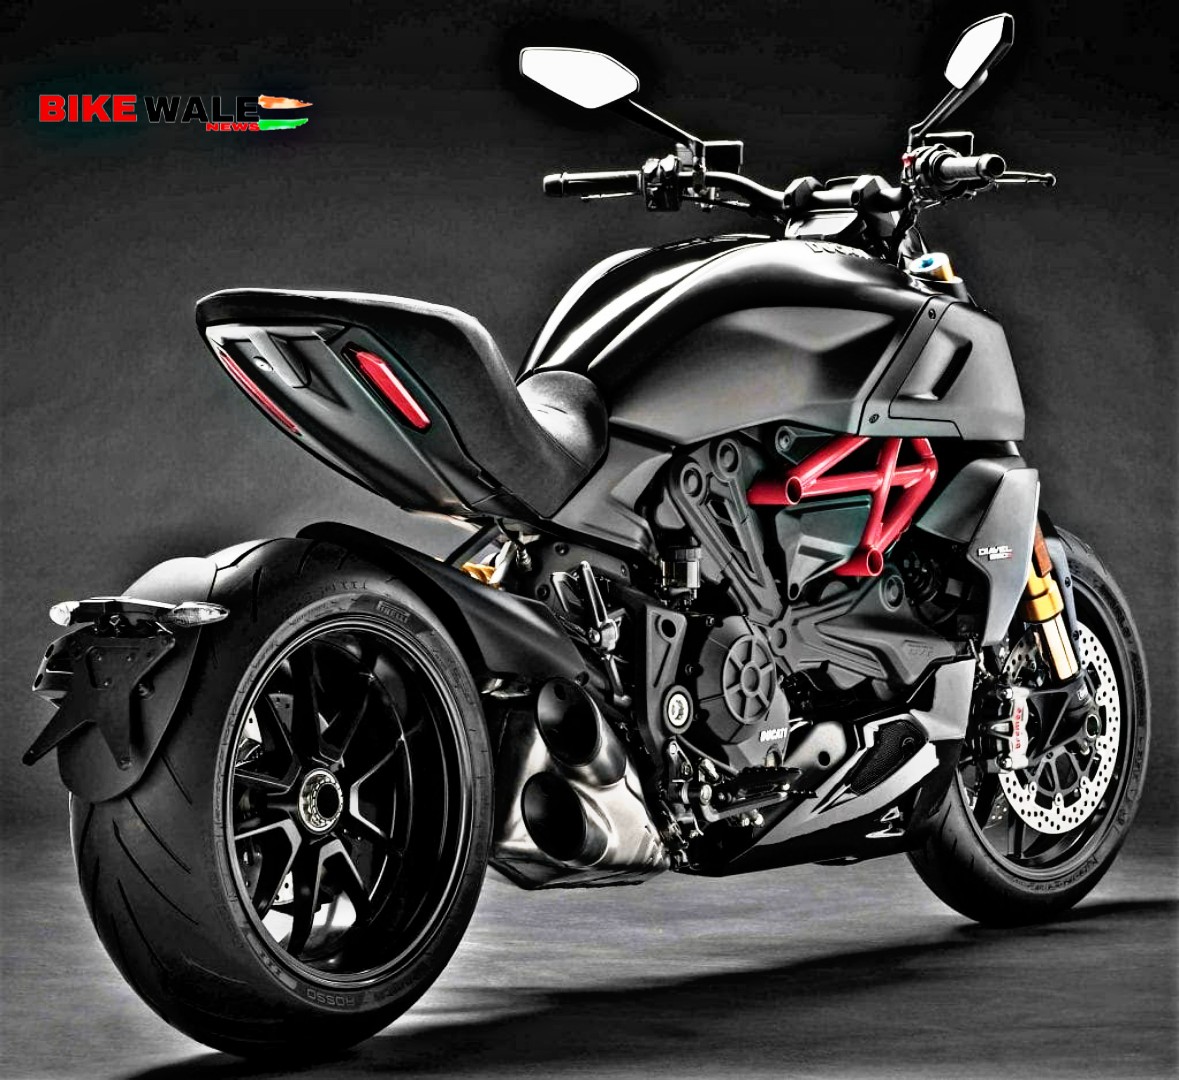 Ducati Diavel India Price